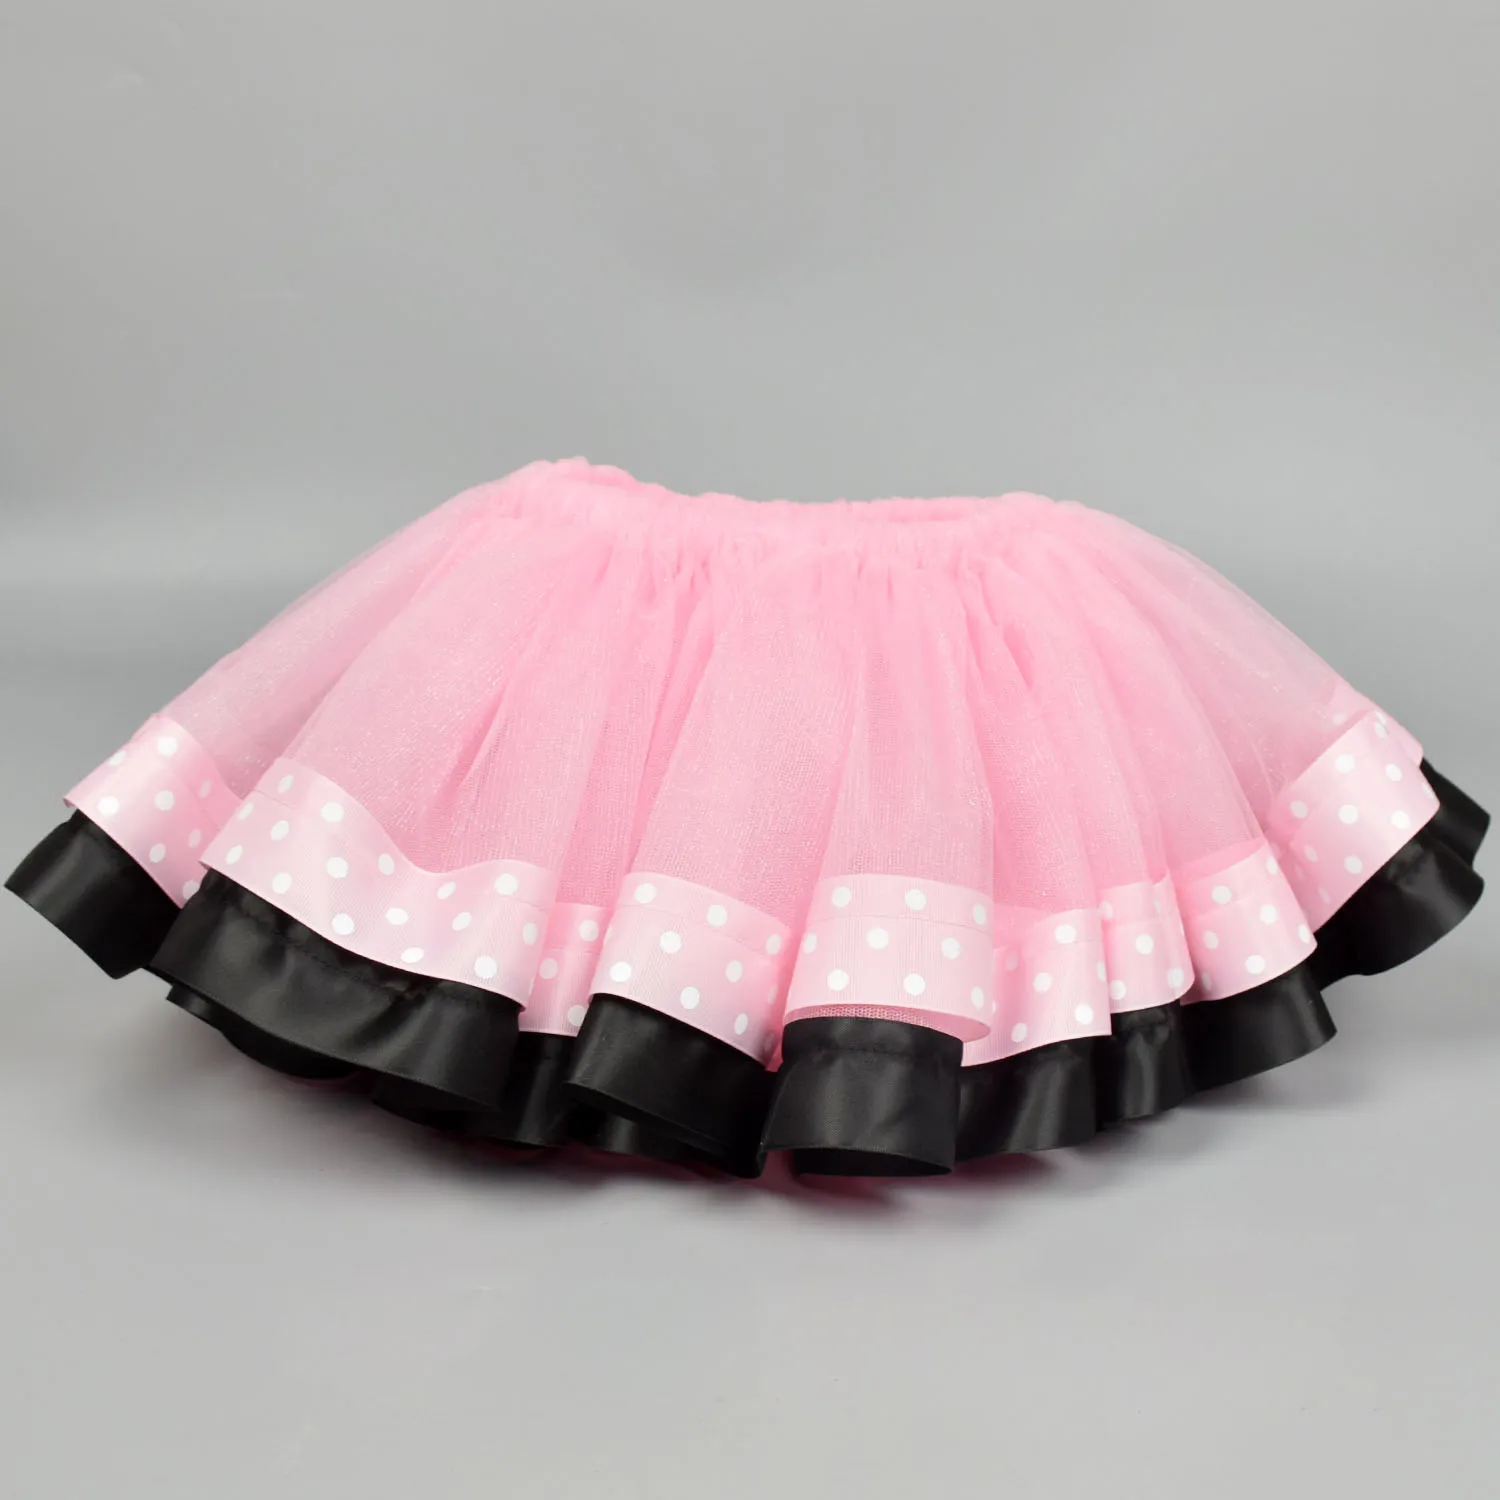 Розовая экстра-Пушистый юбка-пачка для маленьких девочек, праздничный костюм на день рождения для девочек, фатиновая юбка-пачка с лентой, 6 мес.-3 года, 4 года